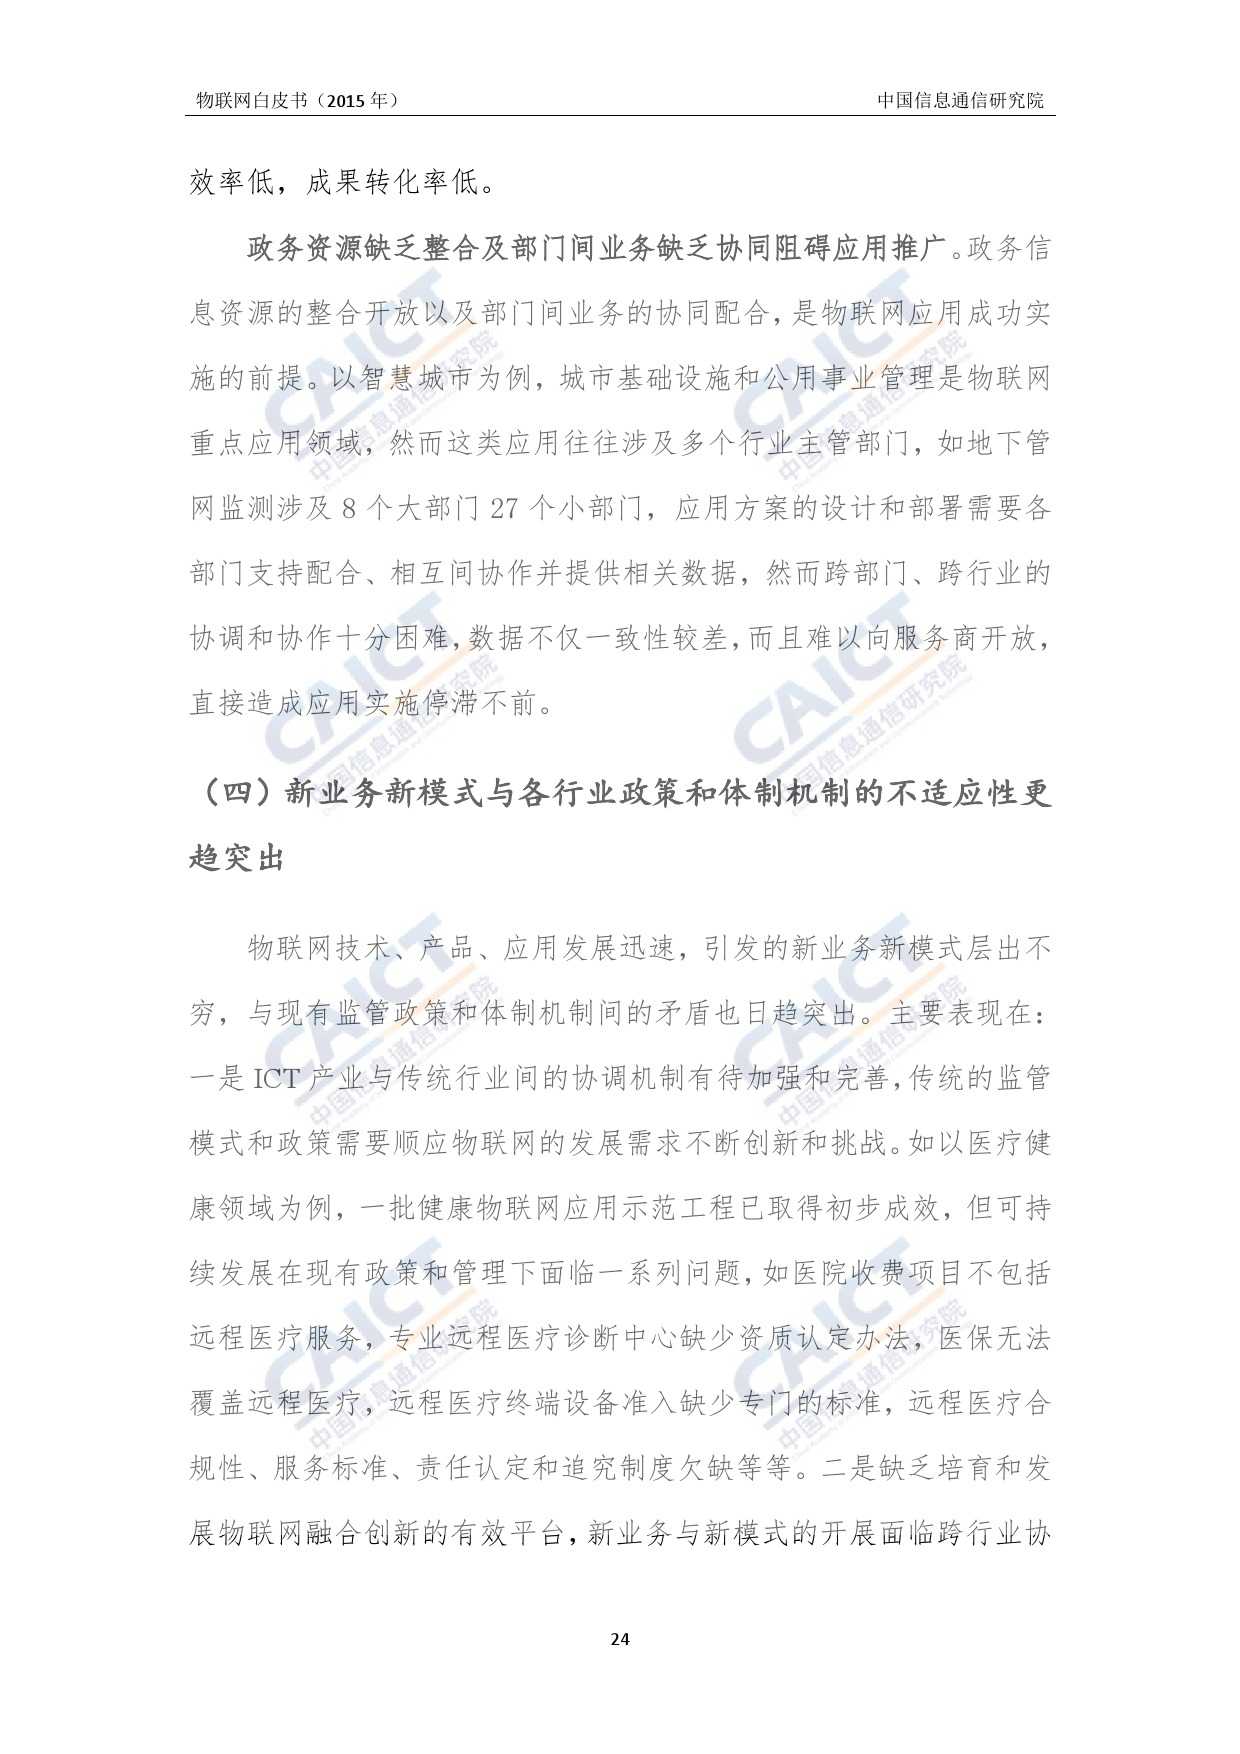 中国信息通信研究院：2015年物联网白皮书_000028